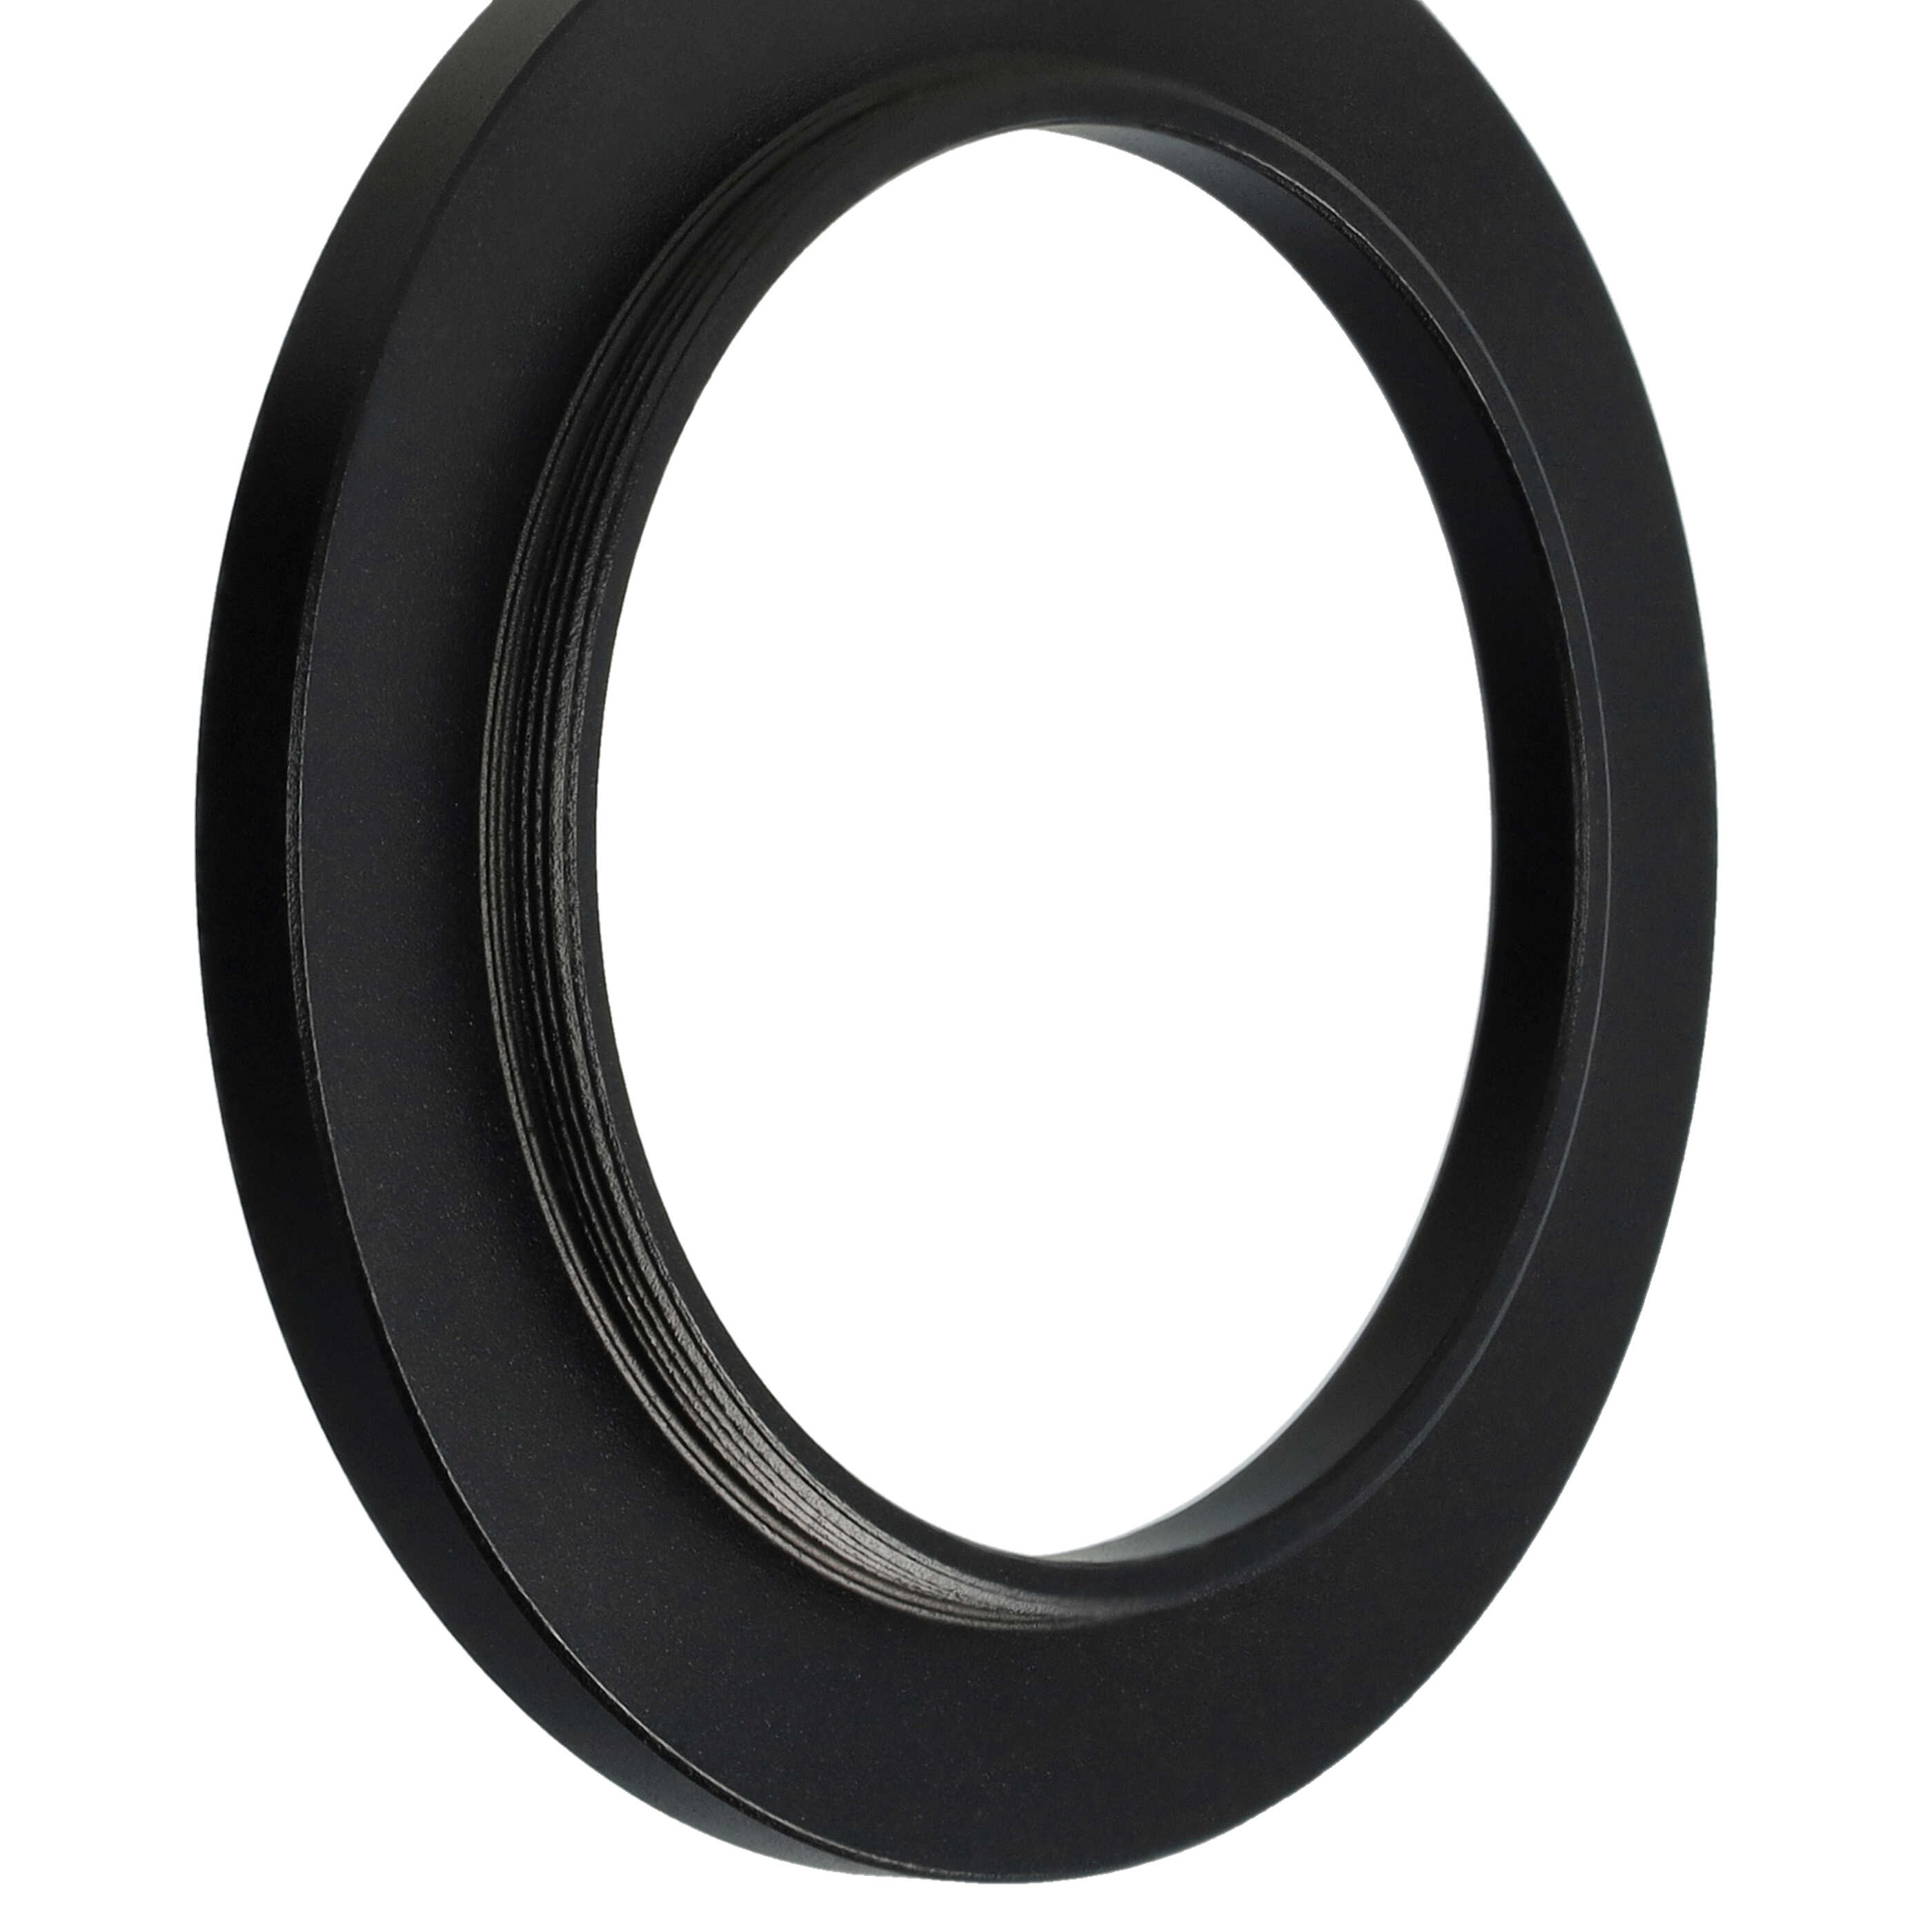 Step-Up-Ring Adapter 40,5 mm auf 52 mm passend für diverse Kamera-Objektive - Filteradapter